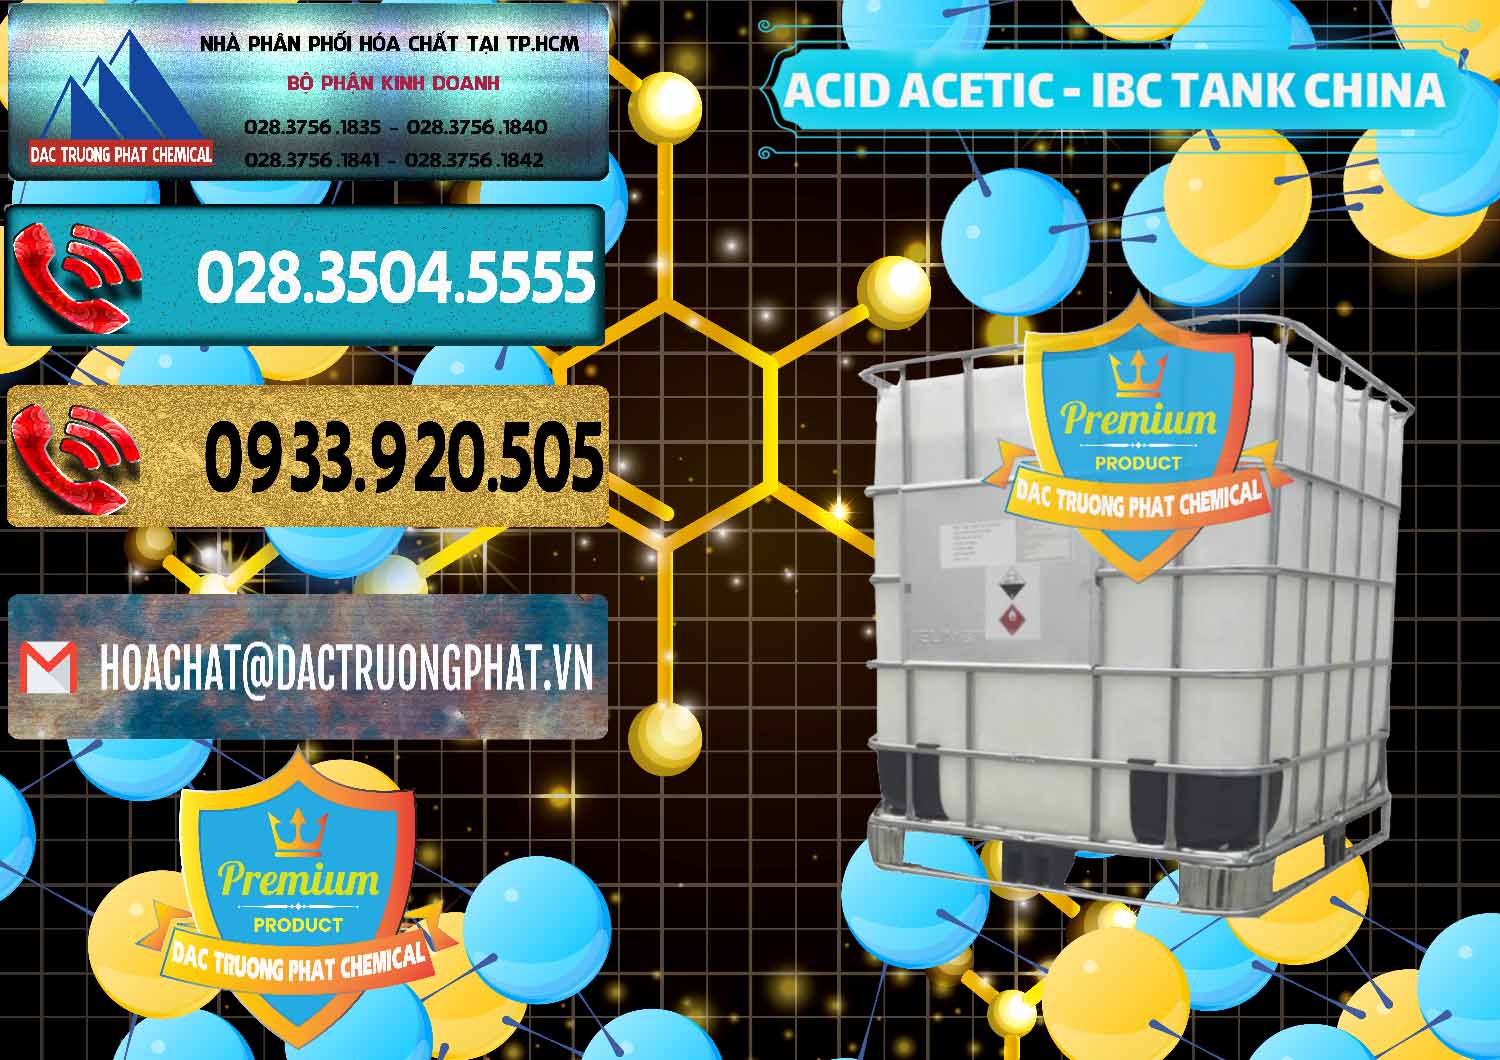 Nơi chuyên bán ( phân phối ) Acetic Acid – Axit Acetic Tank Bồn IBC Trung Quốc China - 0443 - Bán và cung cấp hóa chất tại TP.HCM - hoachatdetnhuom.com